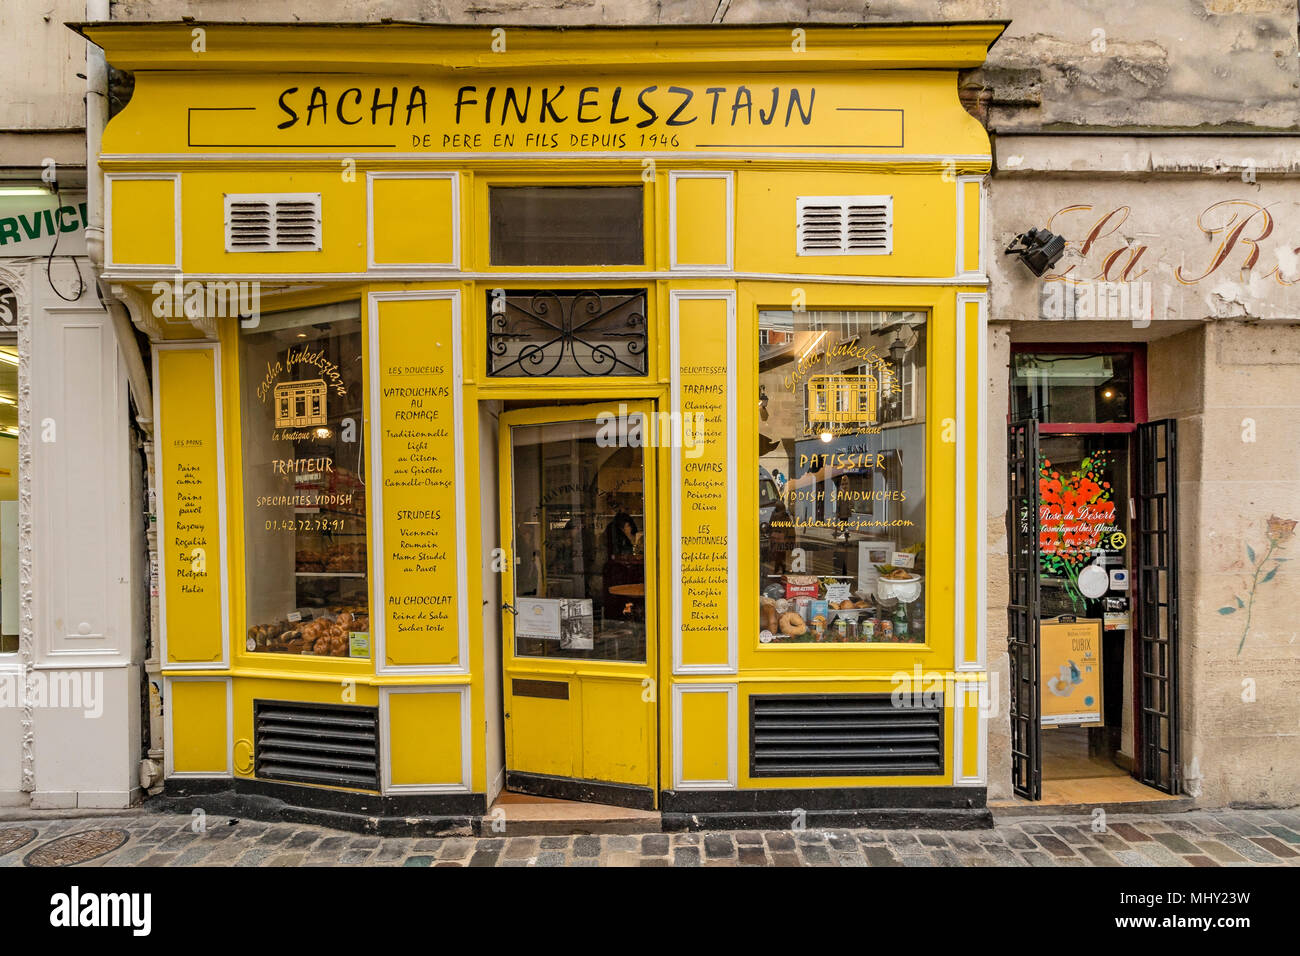 Sacha Finkelsztajn auch bekannt als La Boutique Jaune' Die gelbe Shop" eine jüdische Bäckerei am 27 Rue des Rosiers, Paris, Frankreich Stockfoto